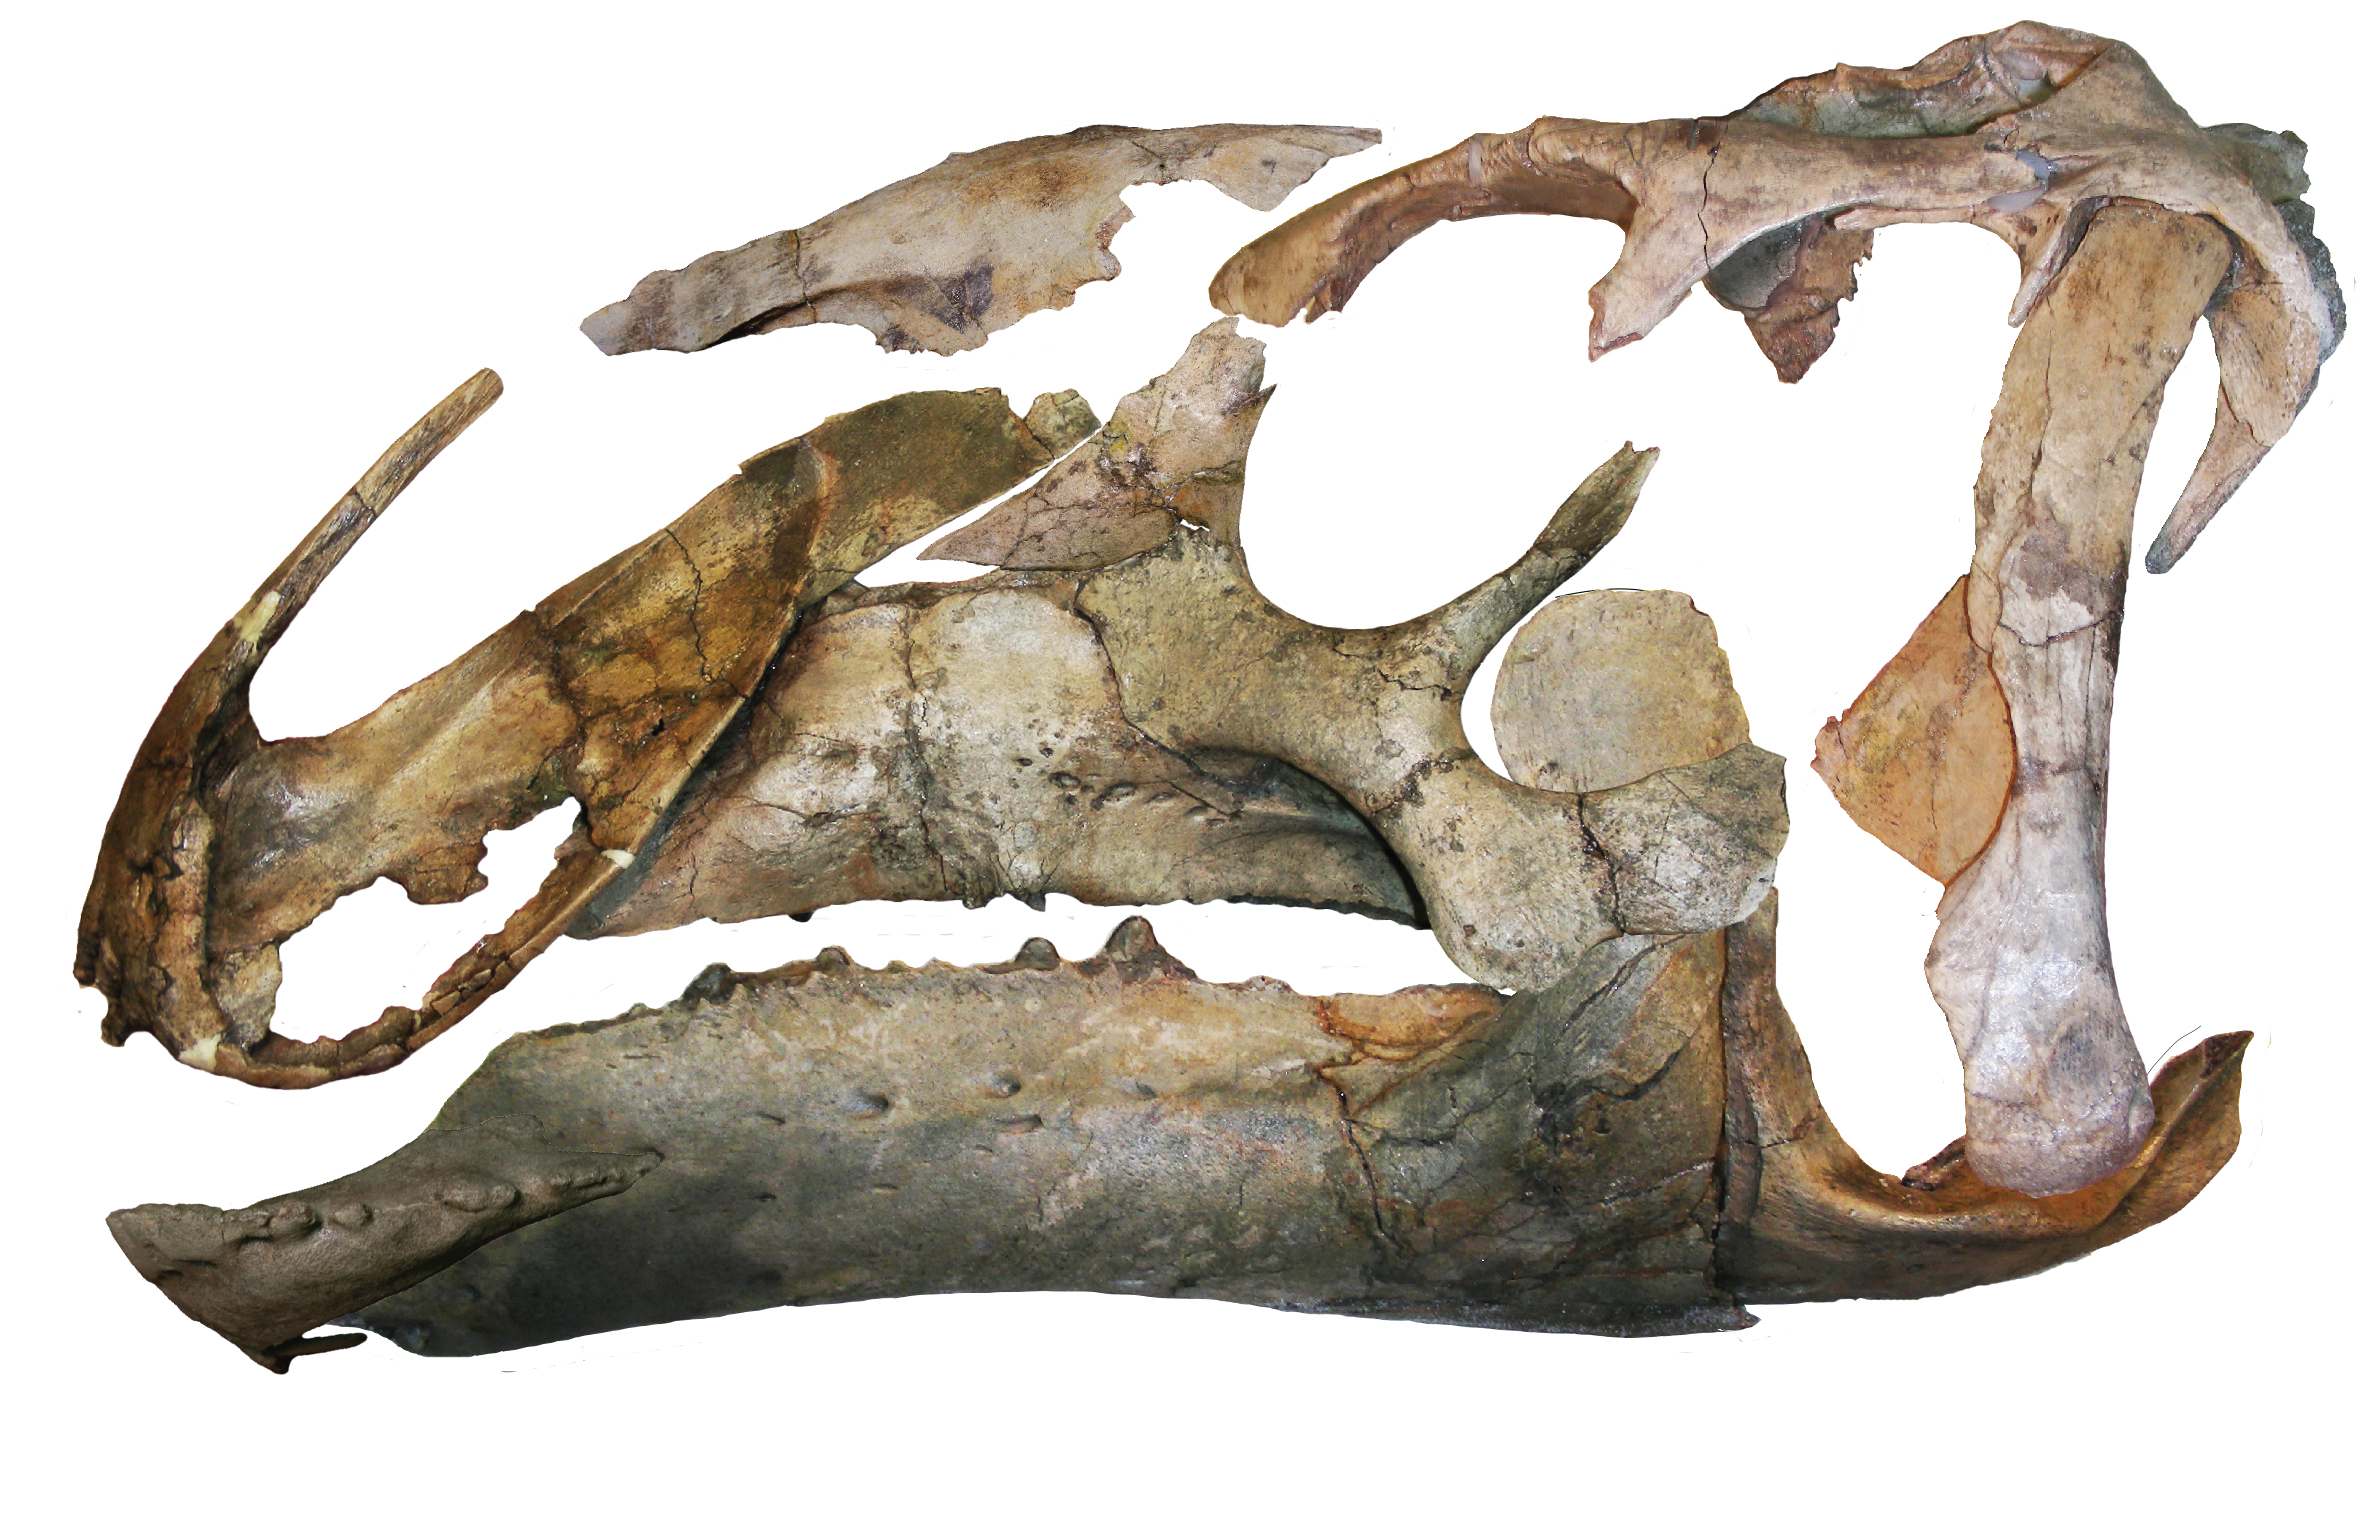 Eotrachodon orientalis skull Image credit: Albert Prieto-Marquez, et al.